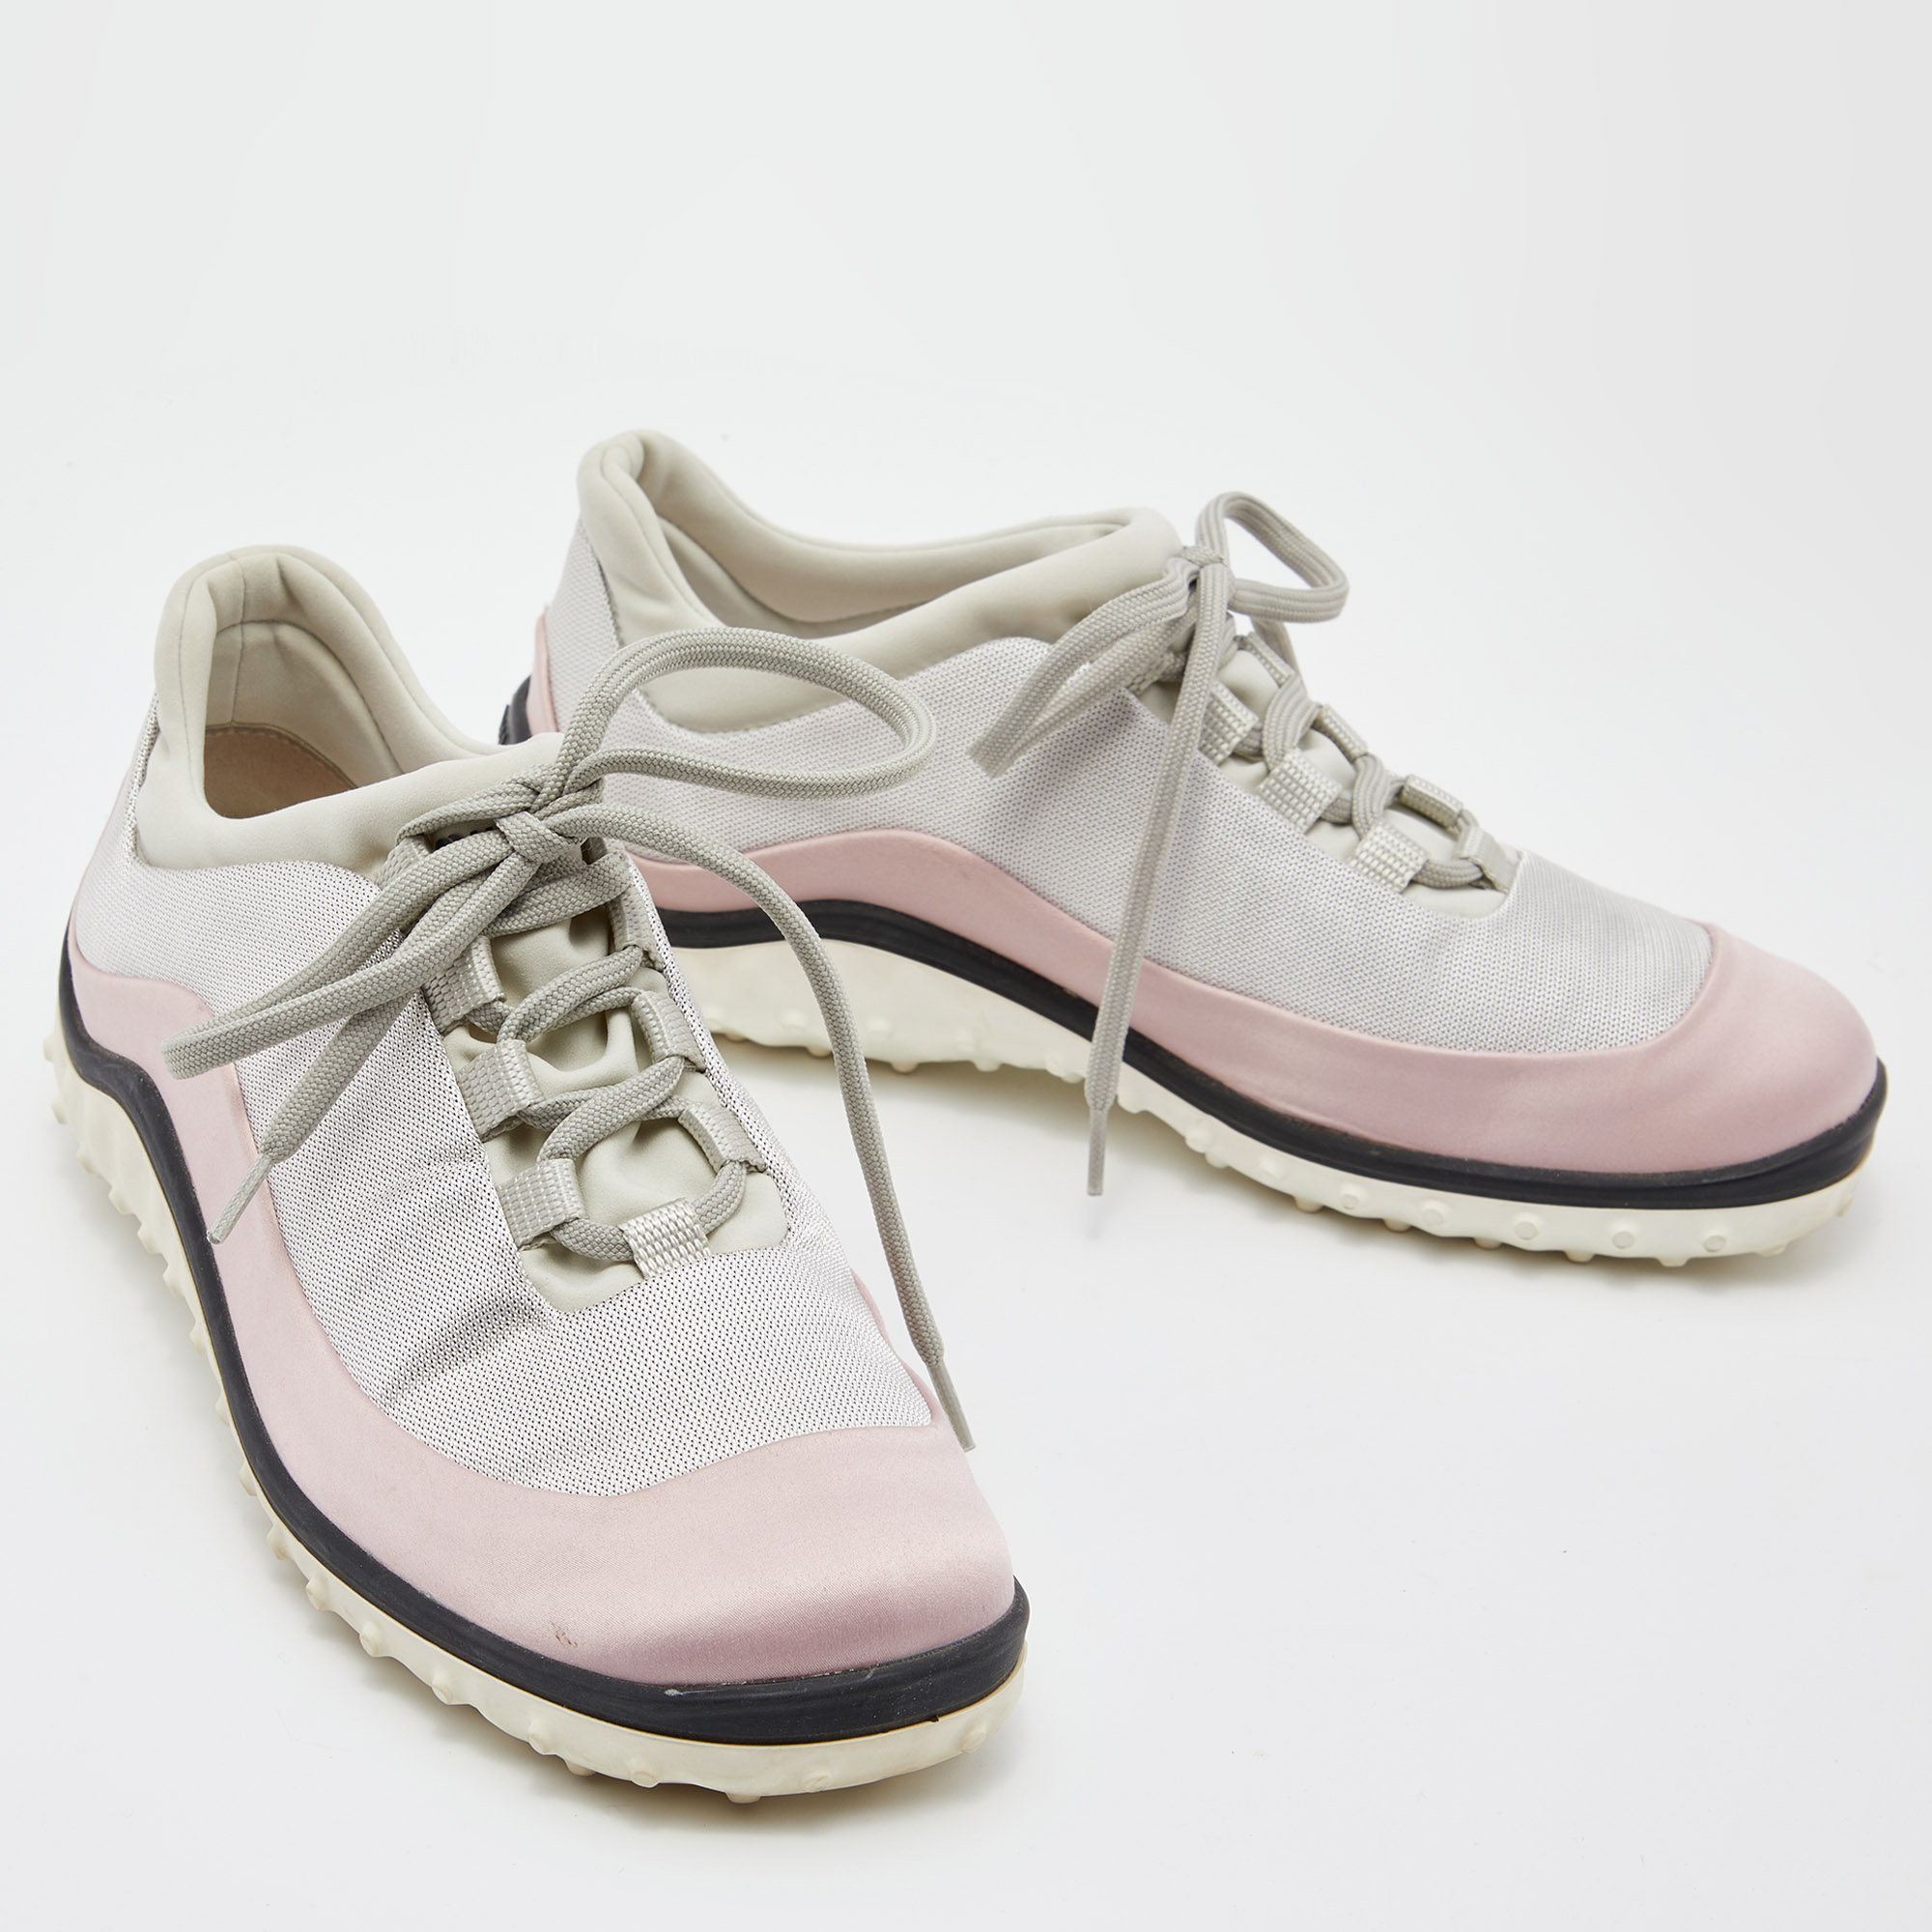 Miu Miu Pink/Grey Satin And Fabric Low Top Sneakers Size 36